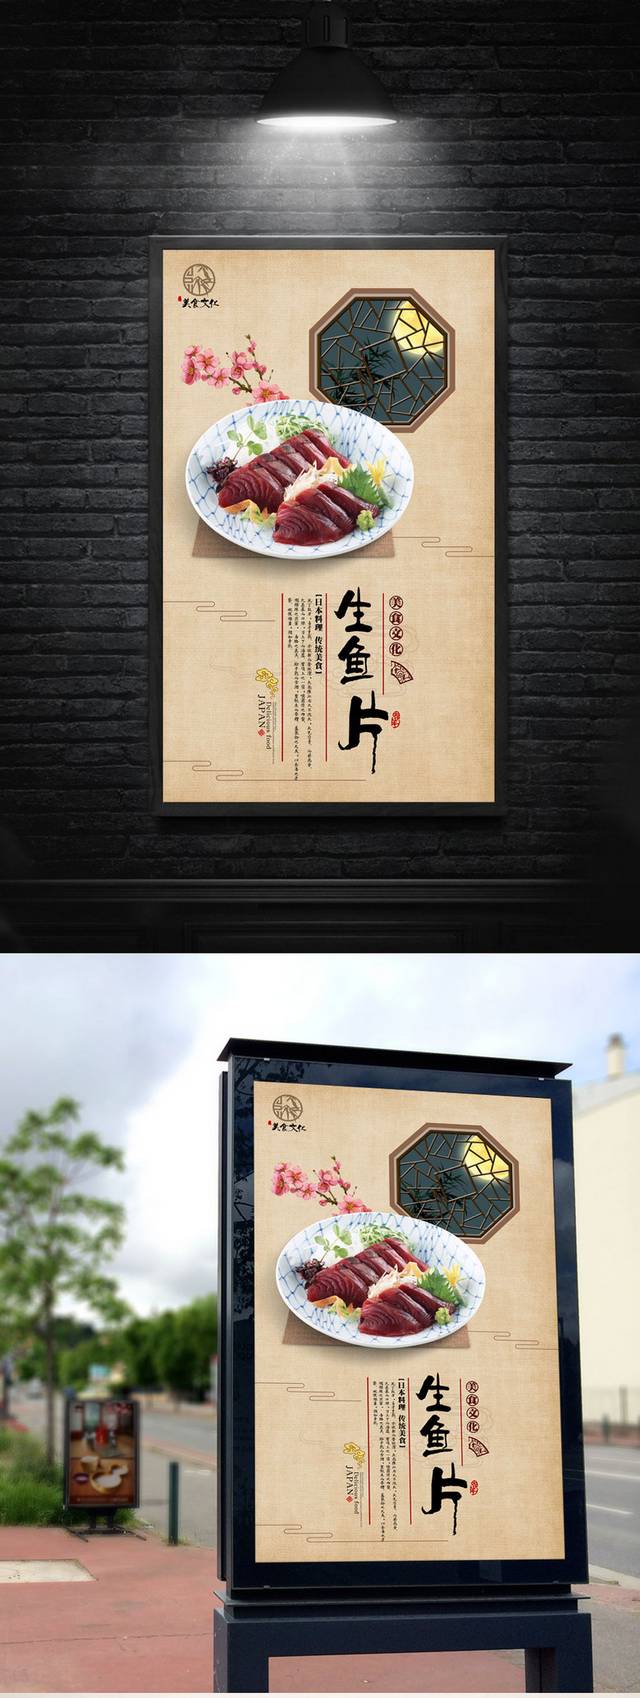 中国风生鱼片海报设计